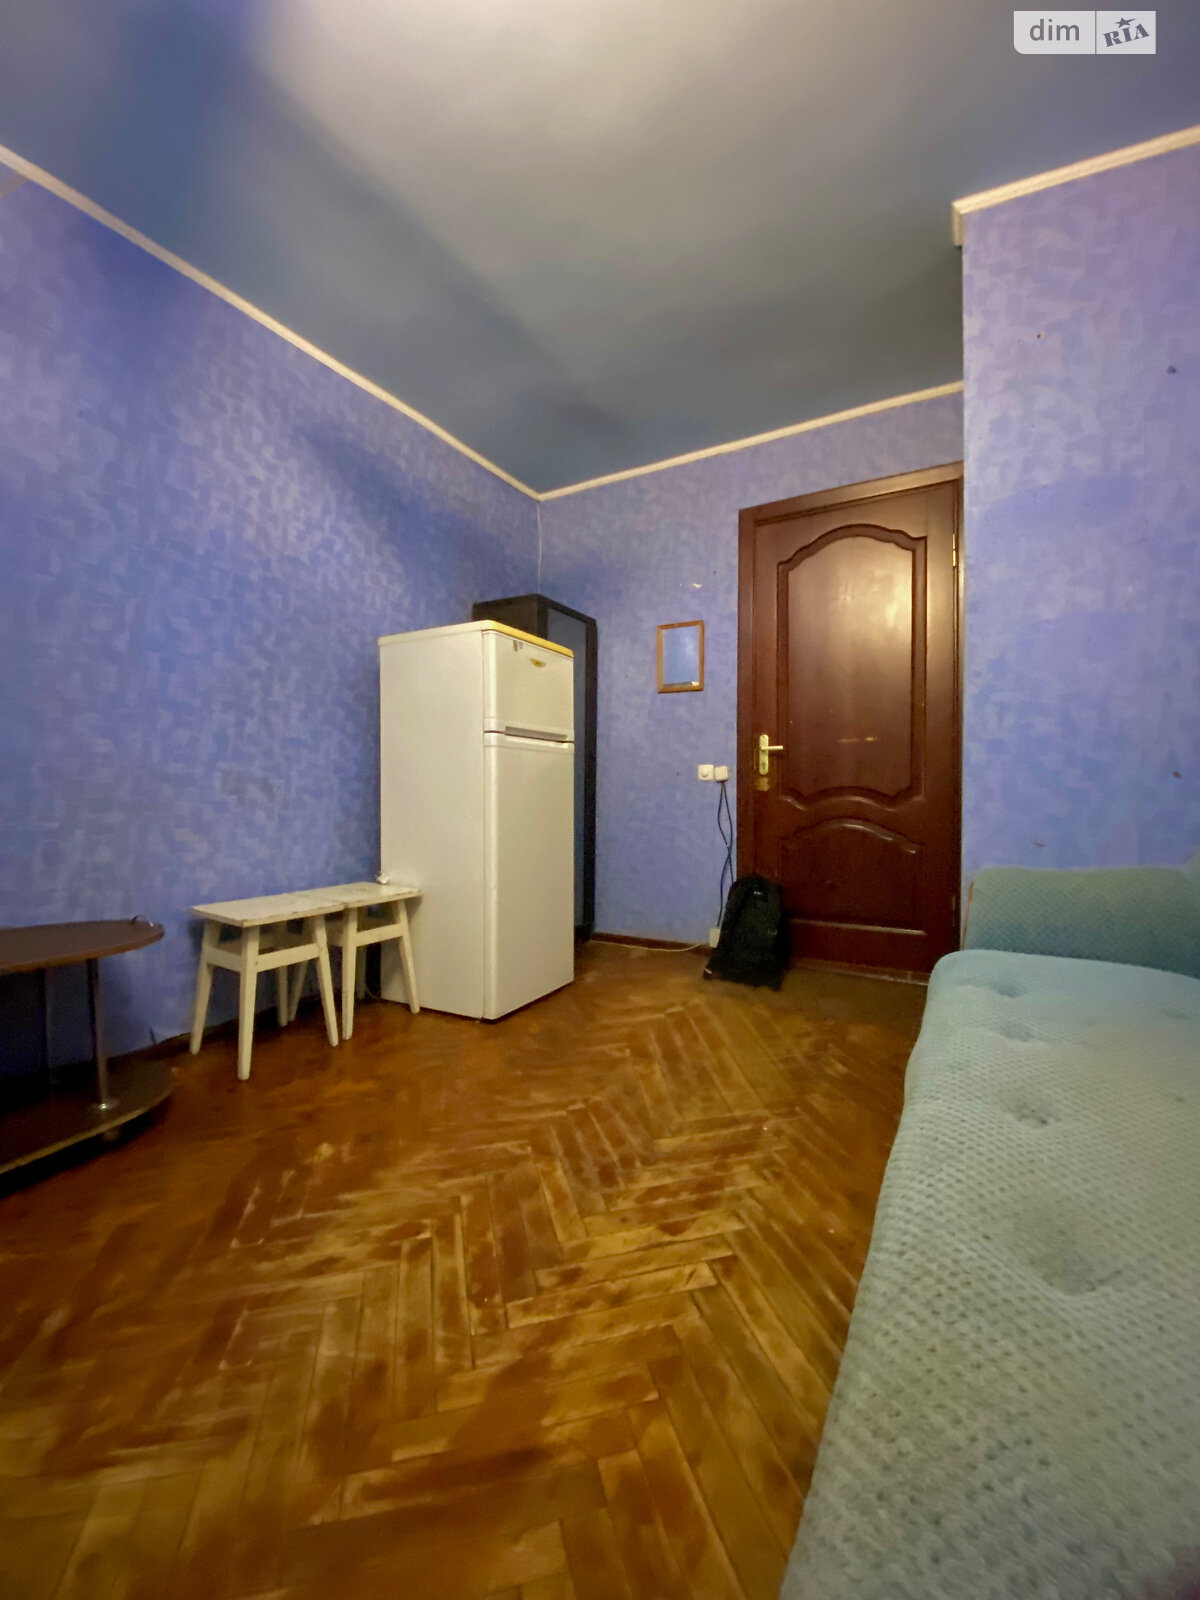 Кімната в Чернігові на вул. Текстильників 12 в районі Шерстянка на продаж фото 1